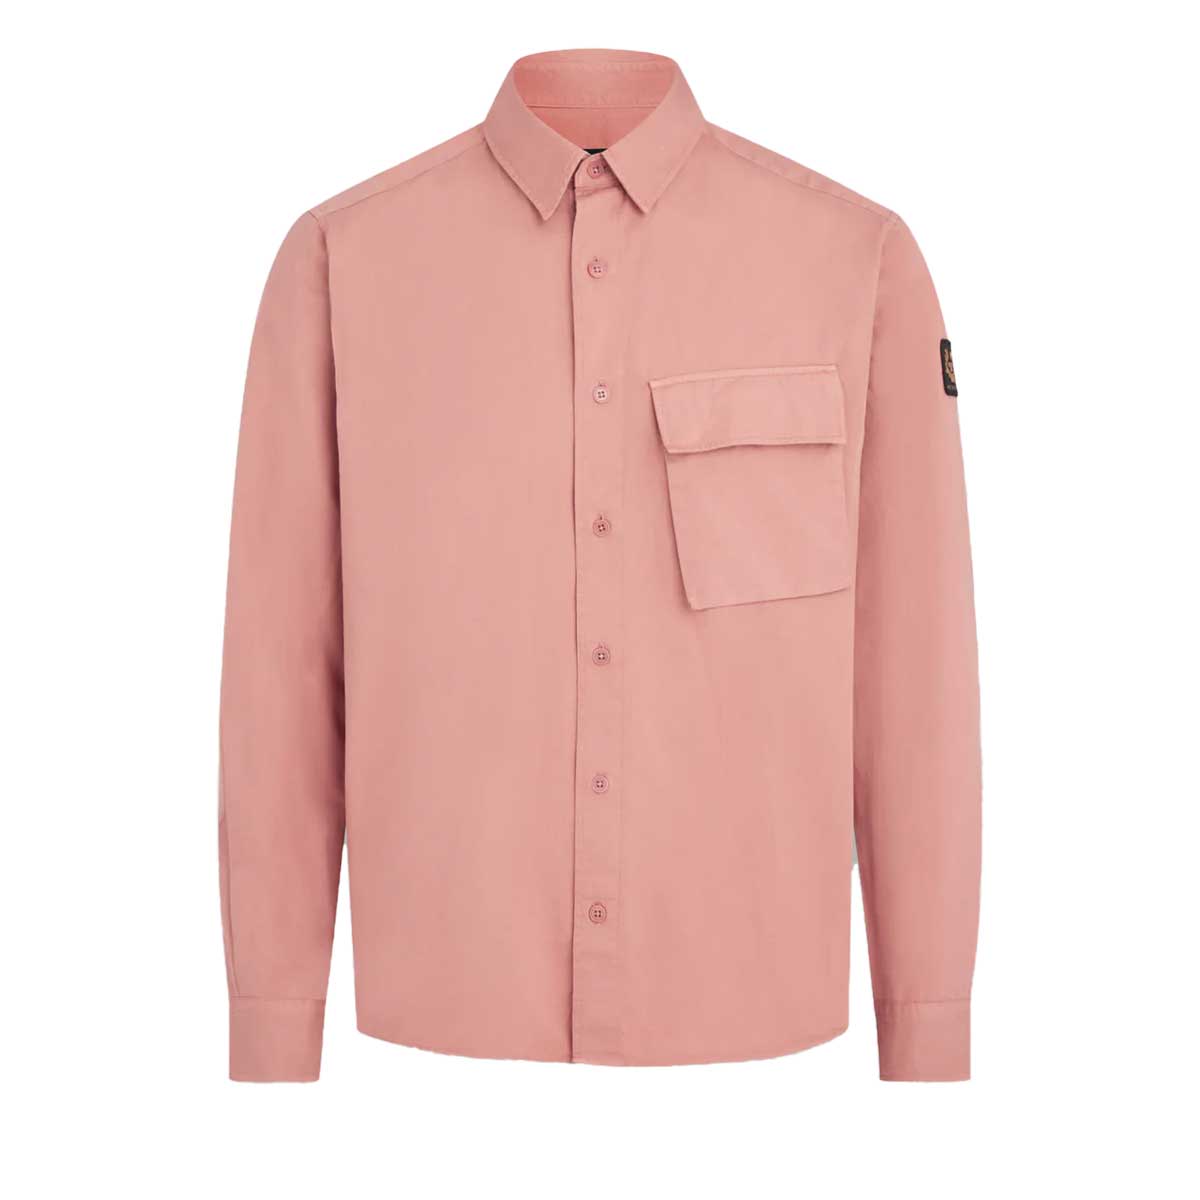 Scale Rust Pink Long Sleeve Shirt  Belstaff   